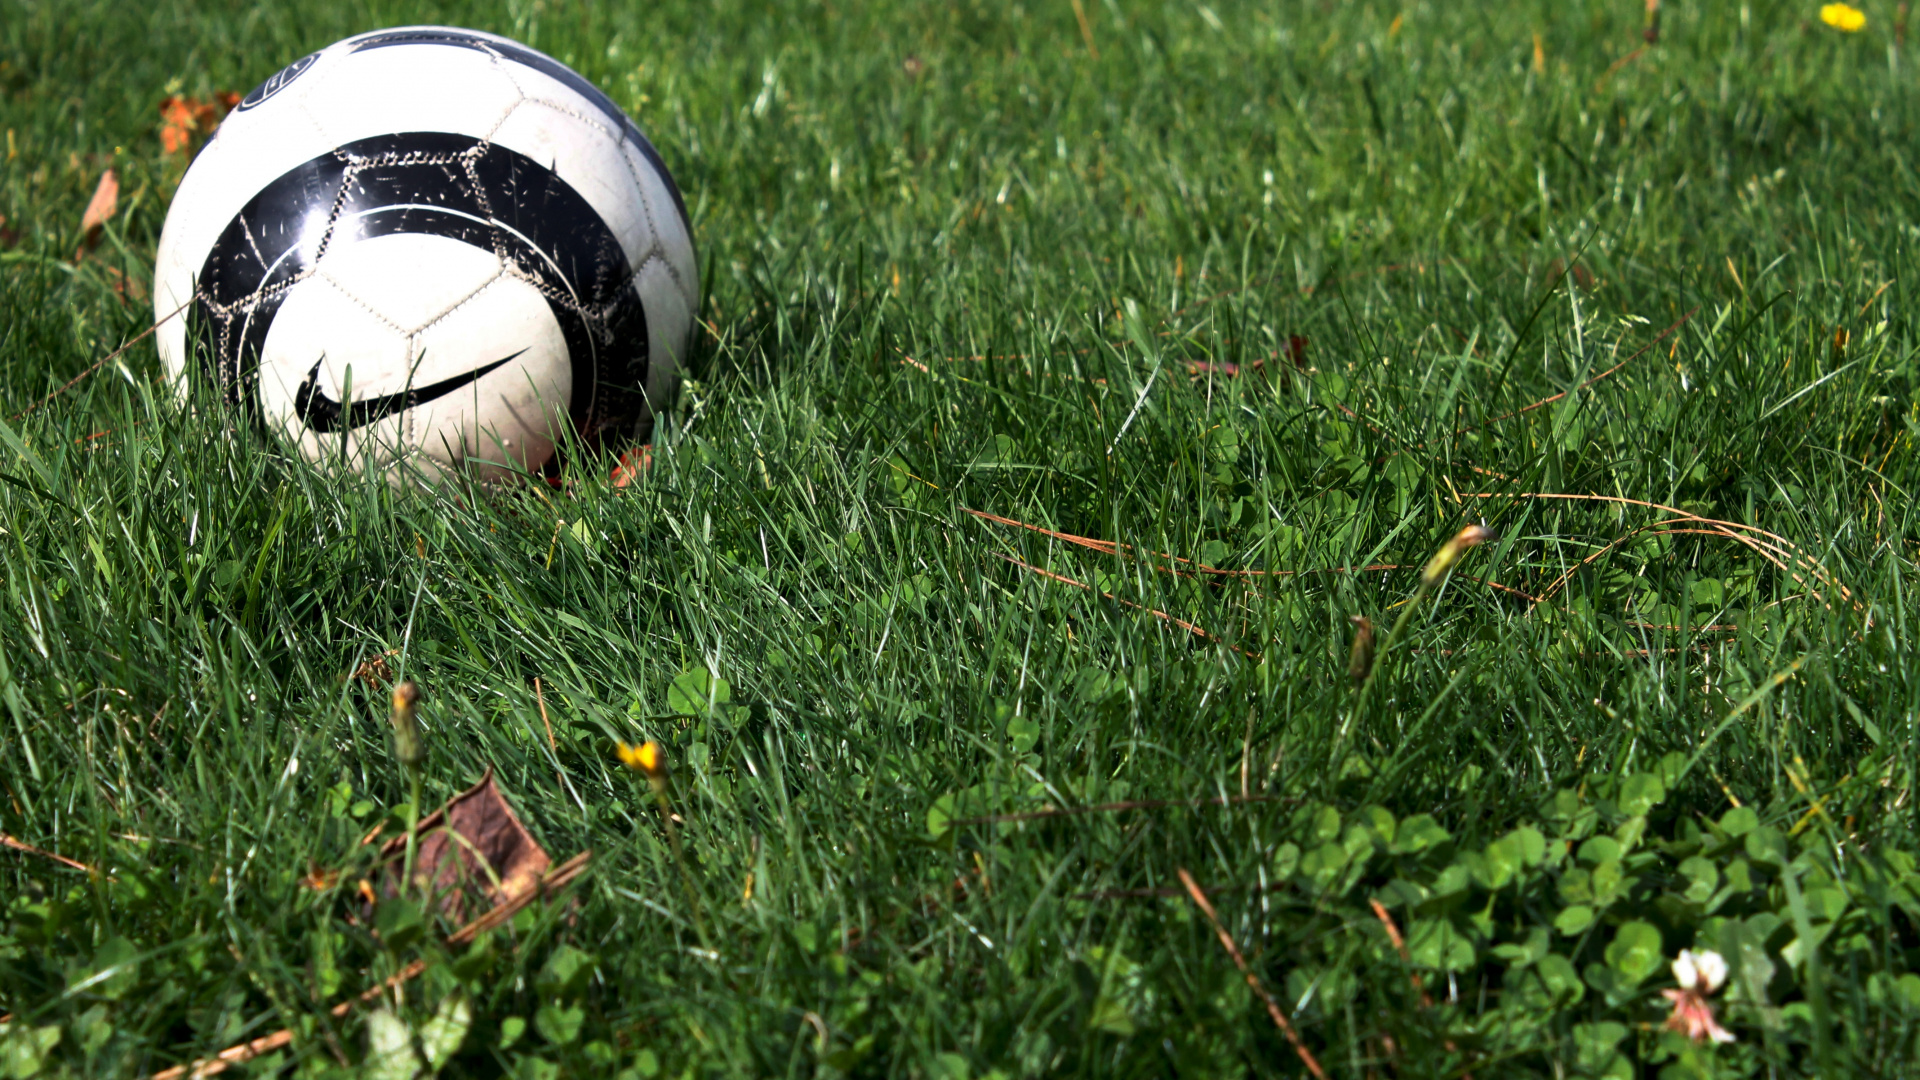 球, 体育设备, 足球, 草, 草坪 壁纸 1920x1080 允许